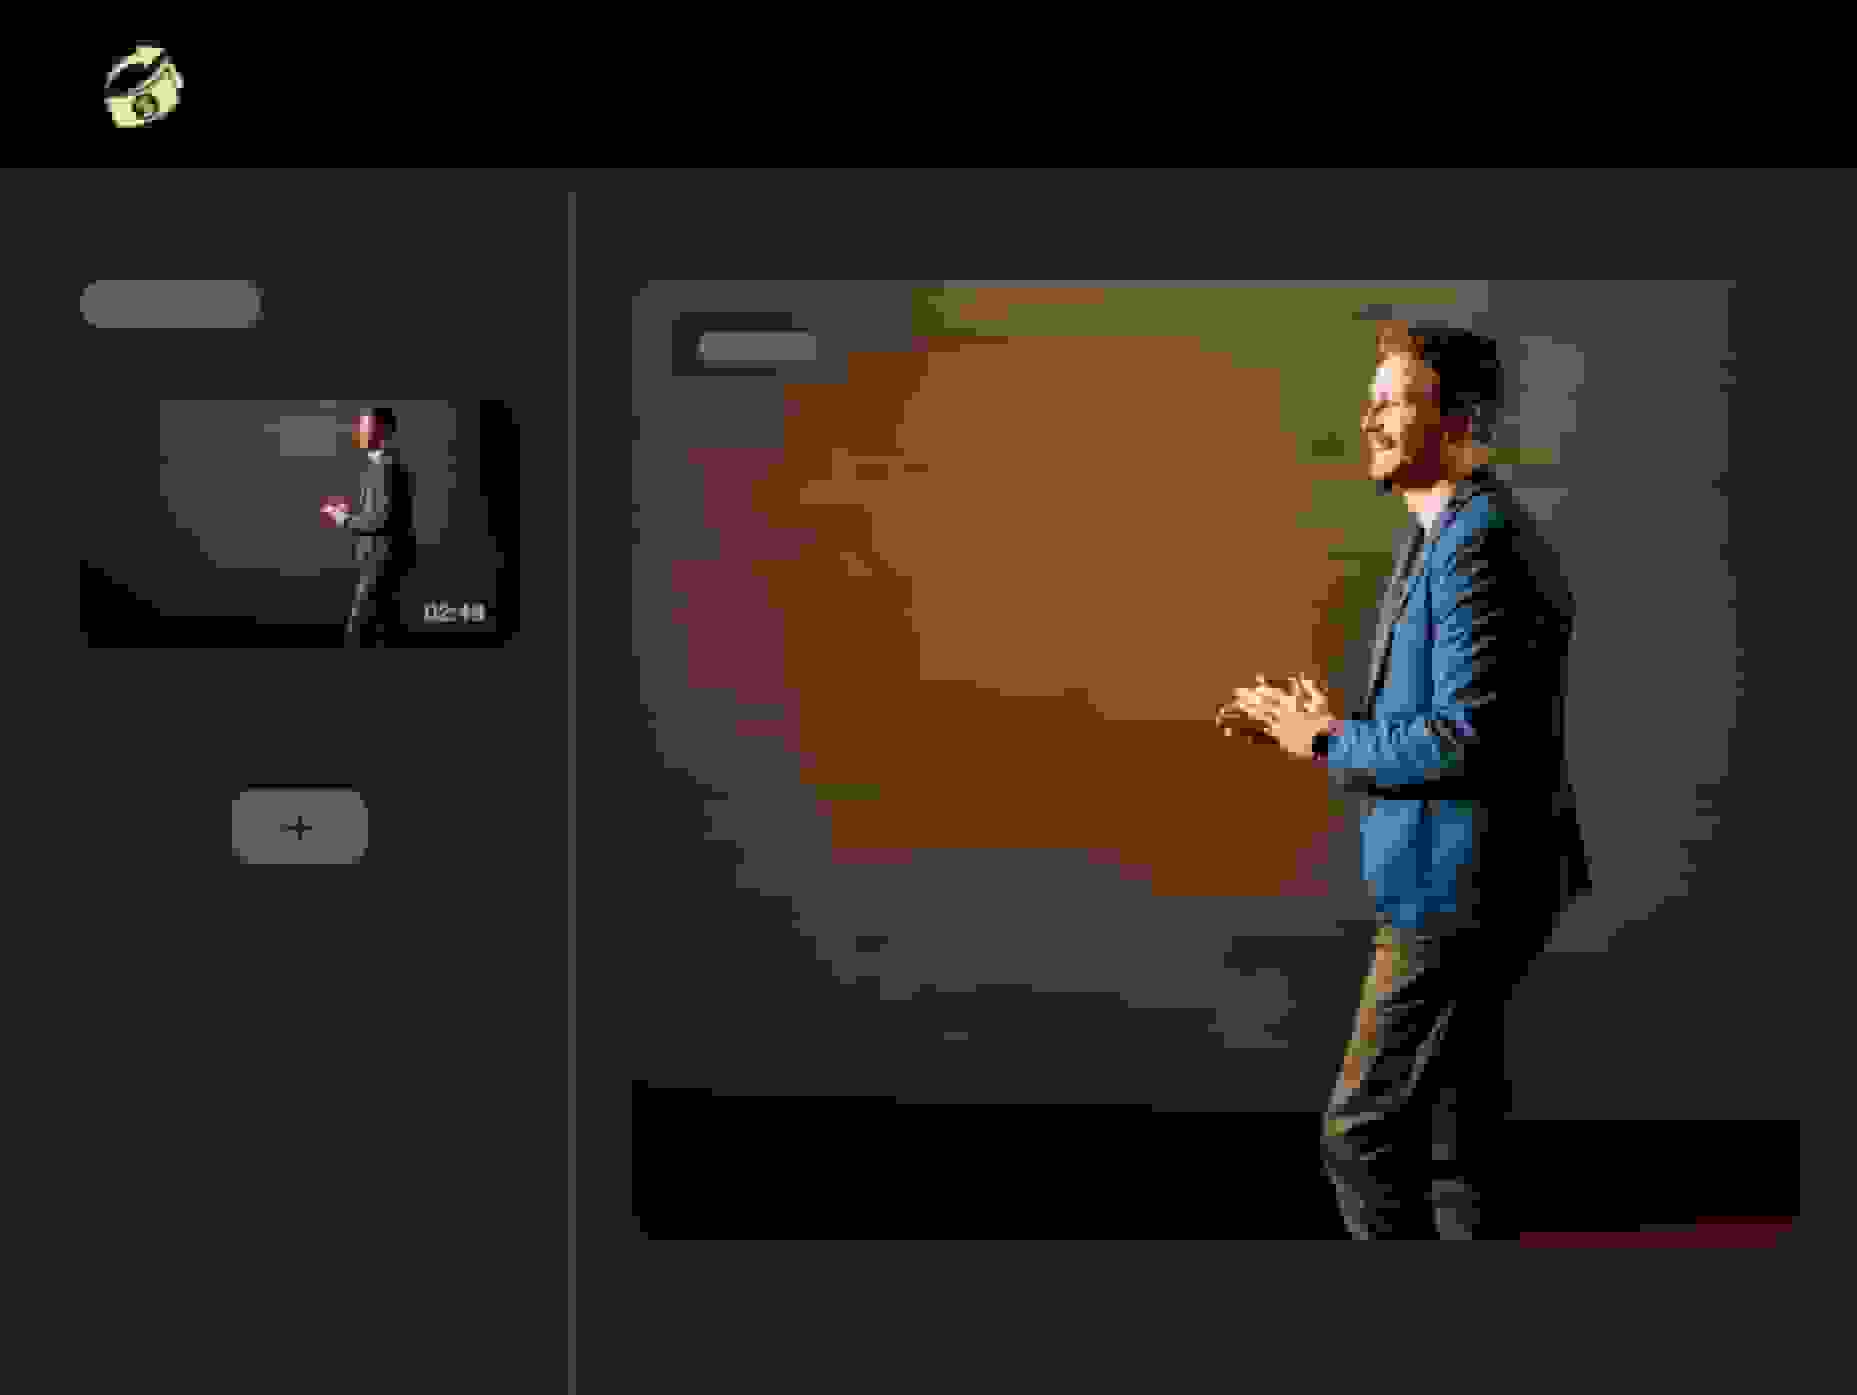 Man giving a presentation via a virtual event platform